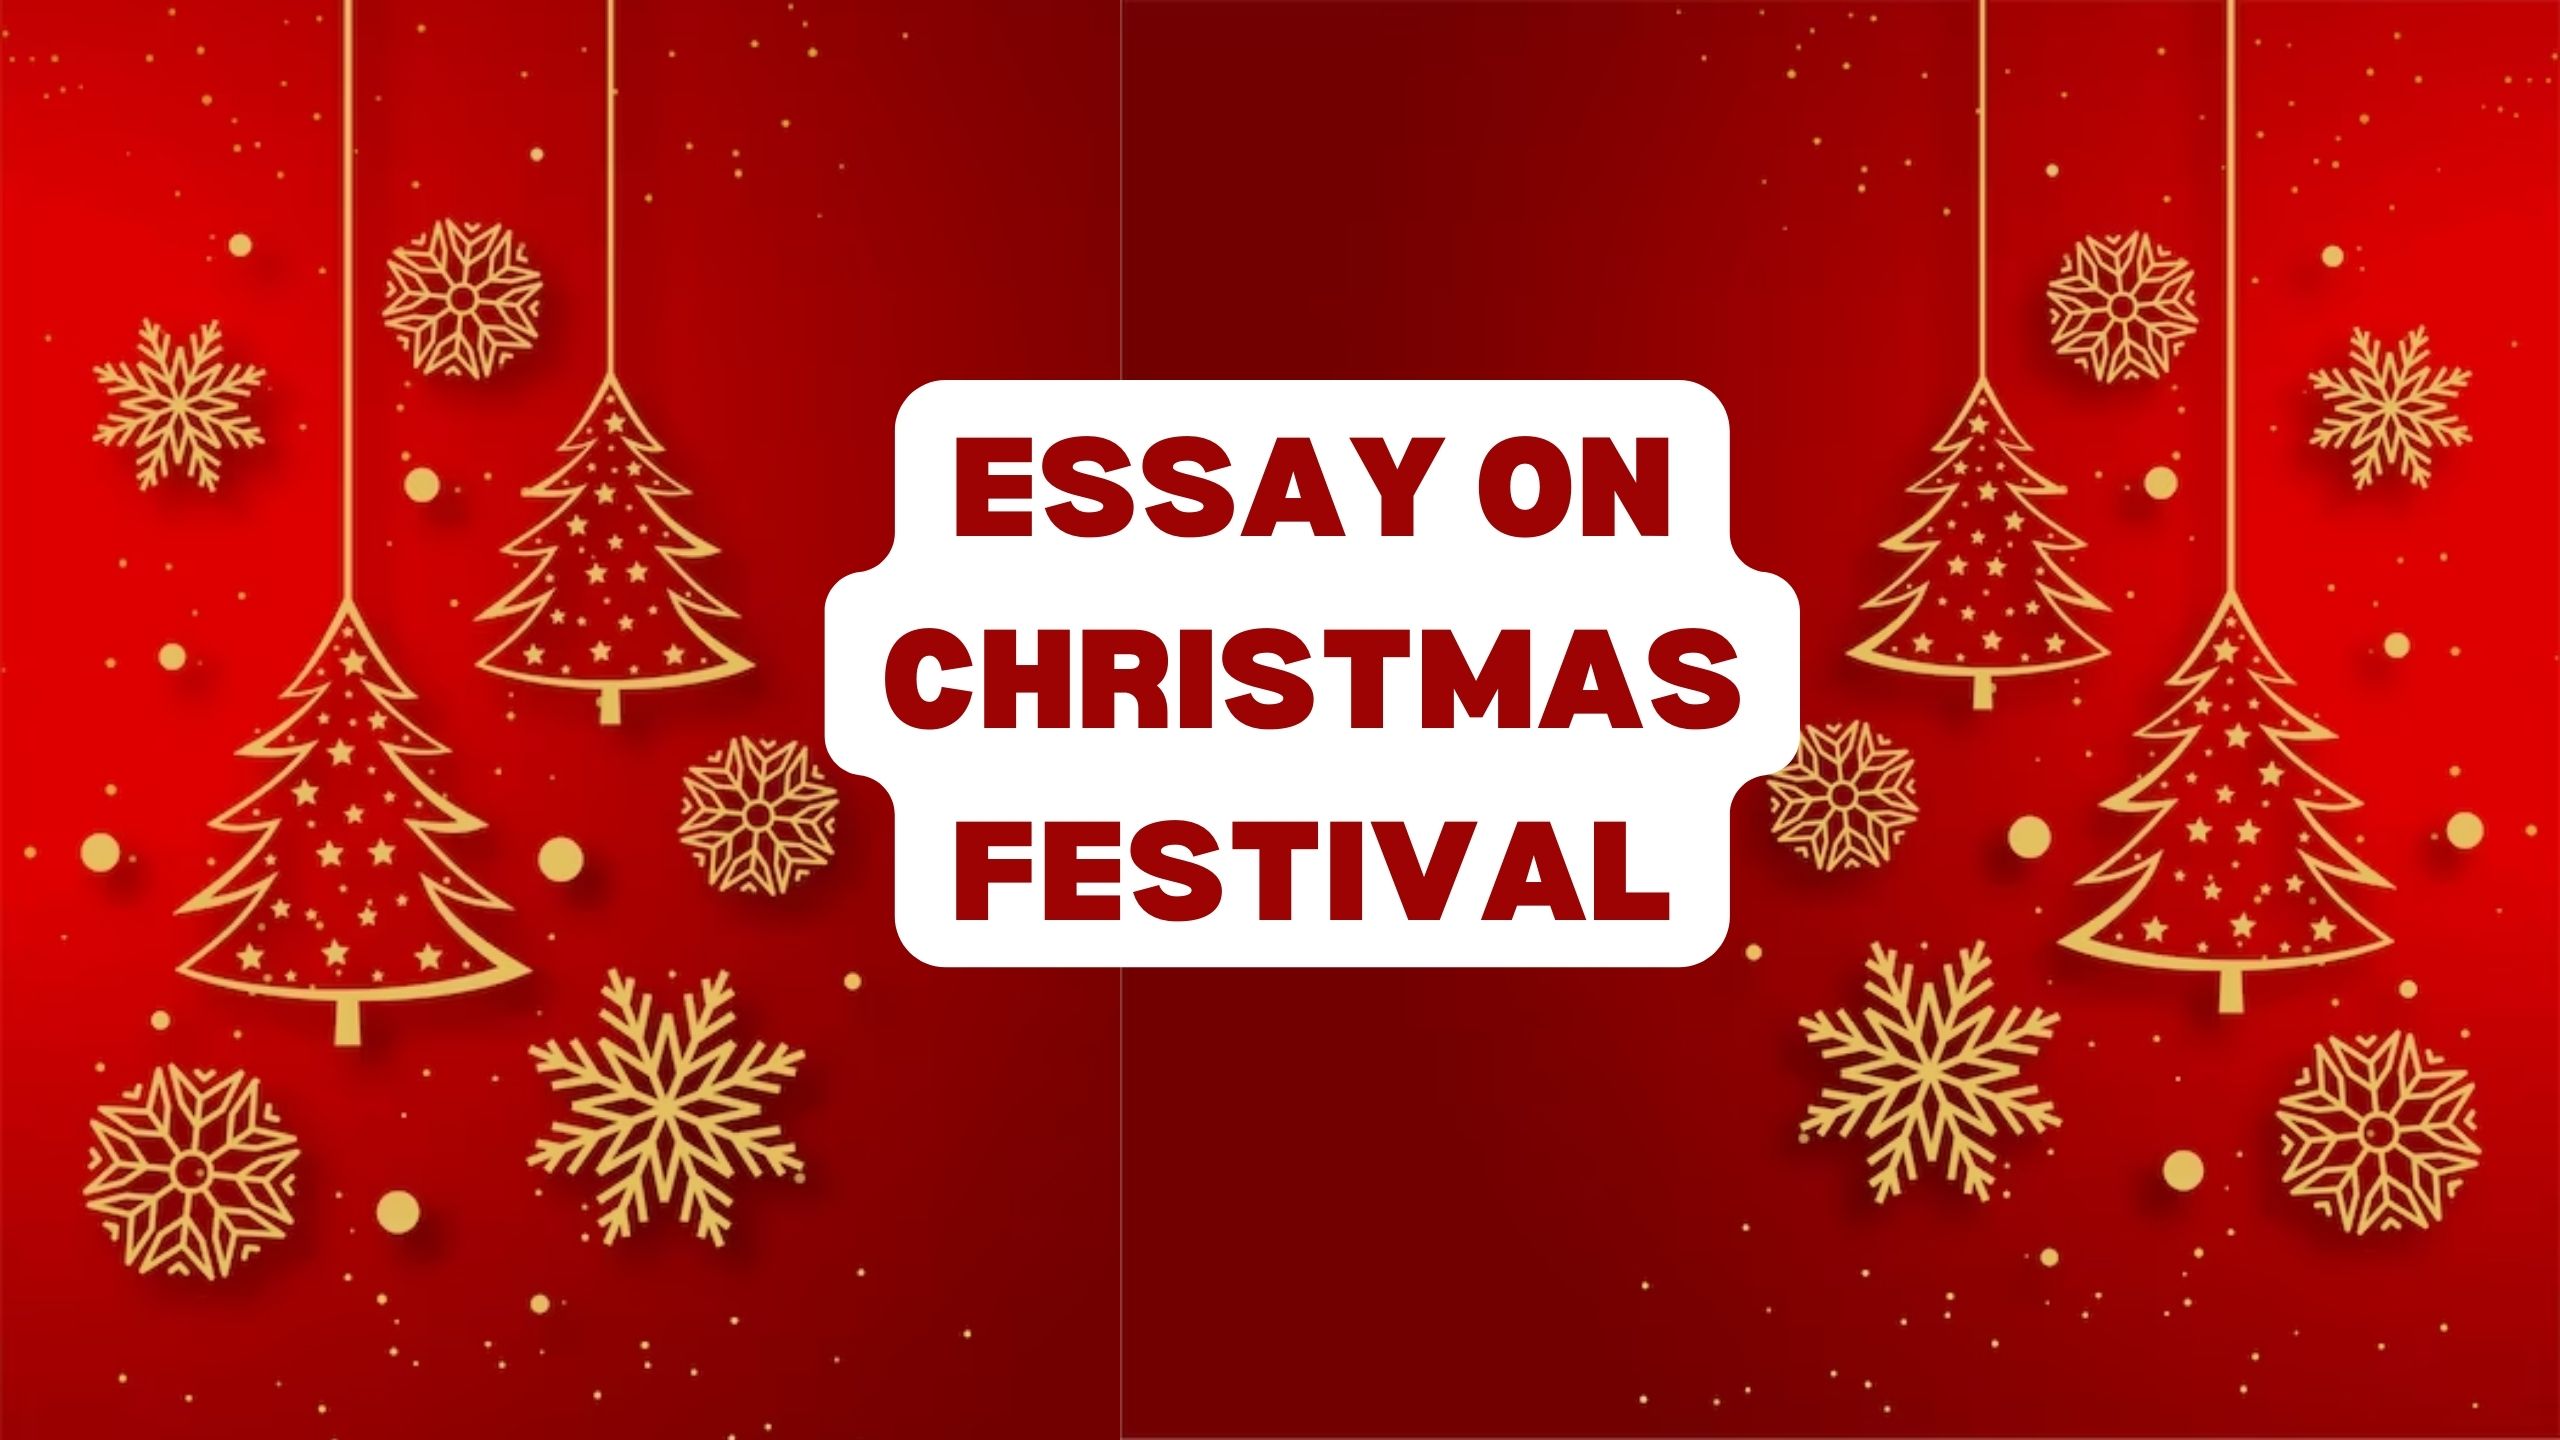 Essay on Christmas Festival